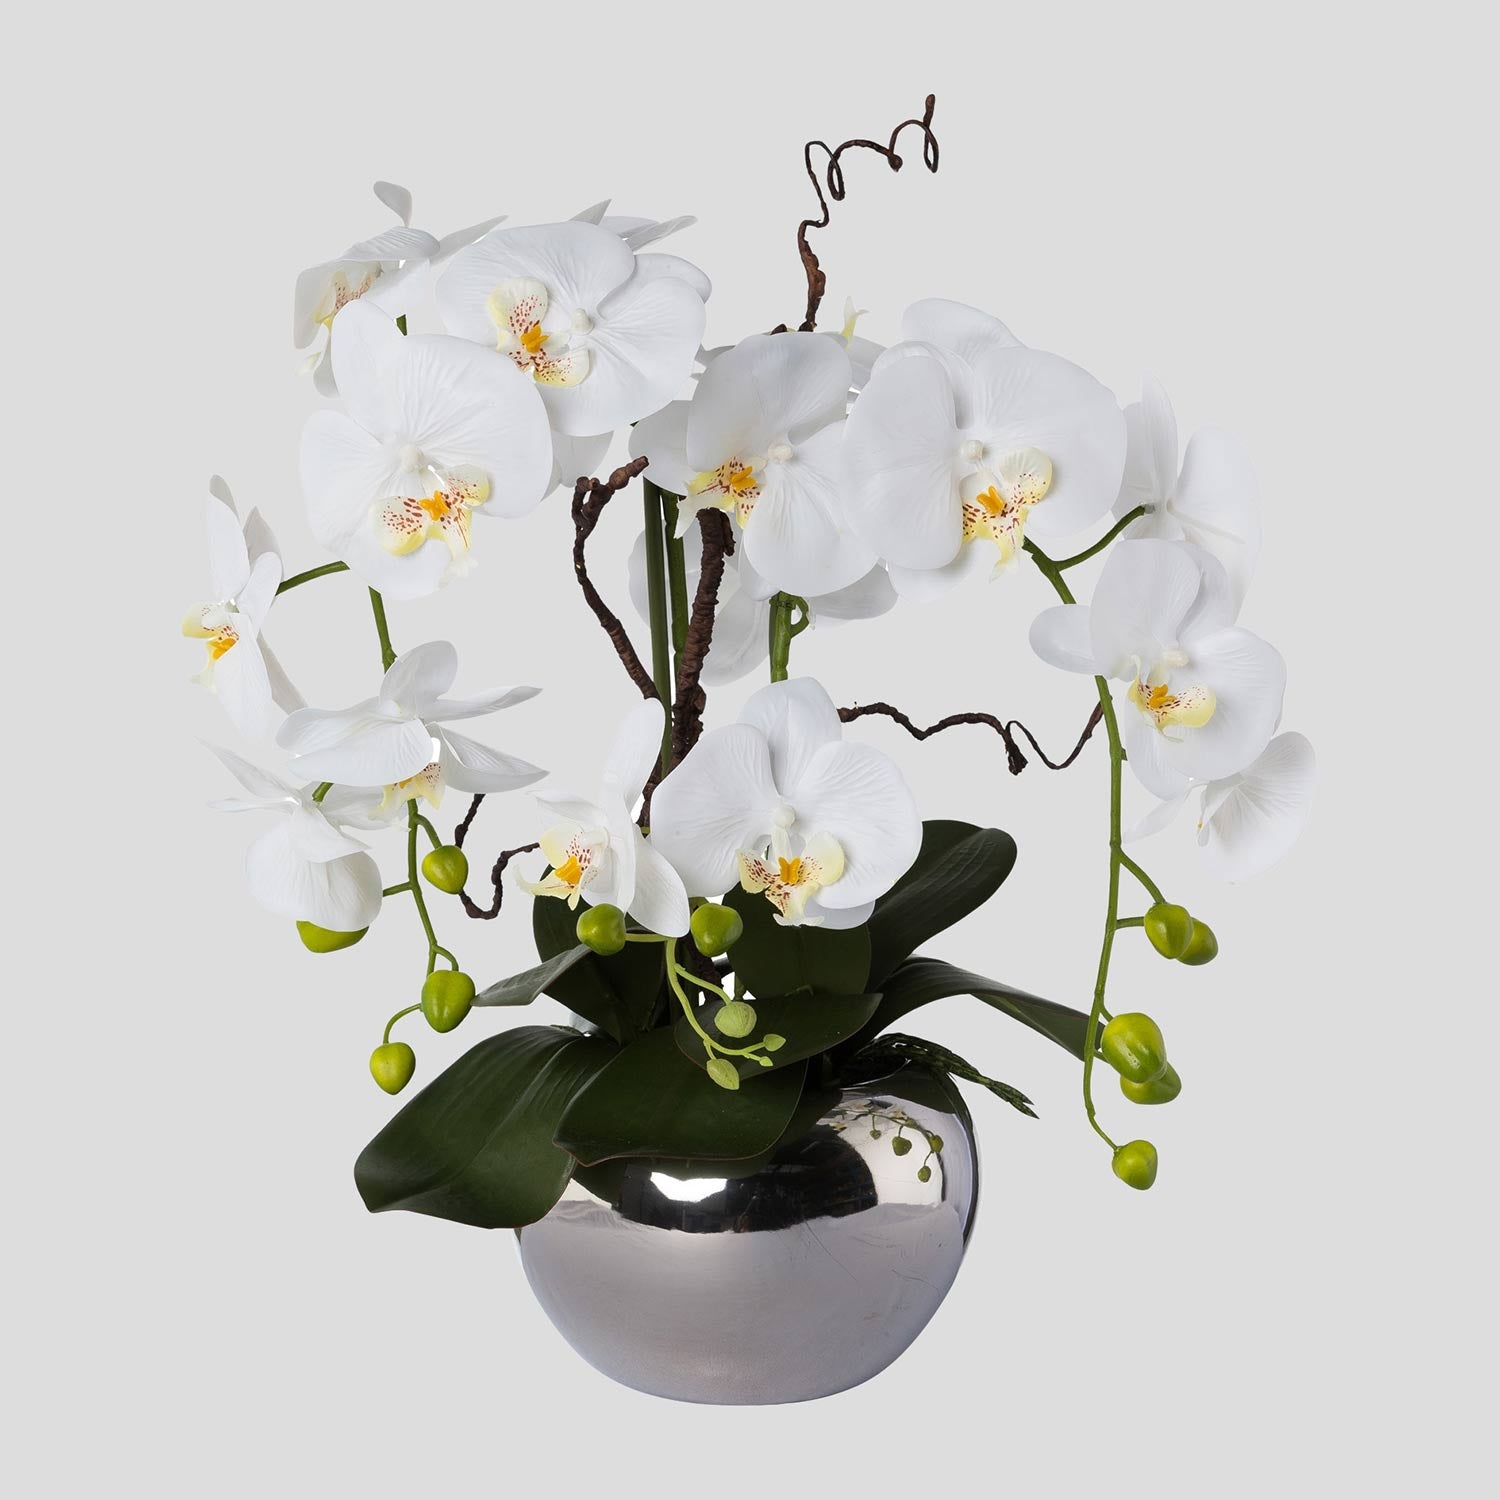 Fehér színű mű orchidea, ezüst színű fém kaspóban.